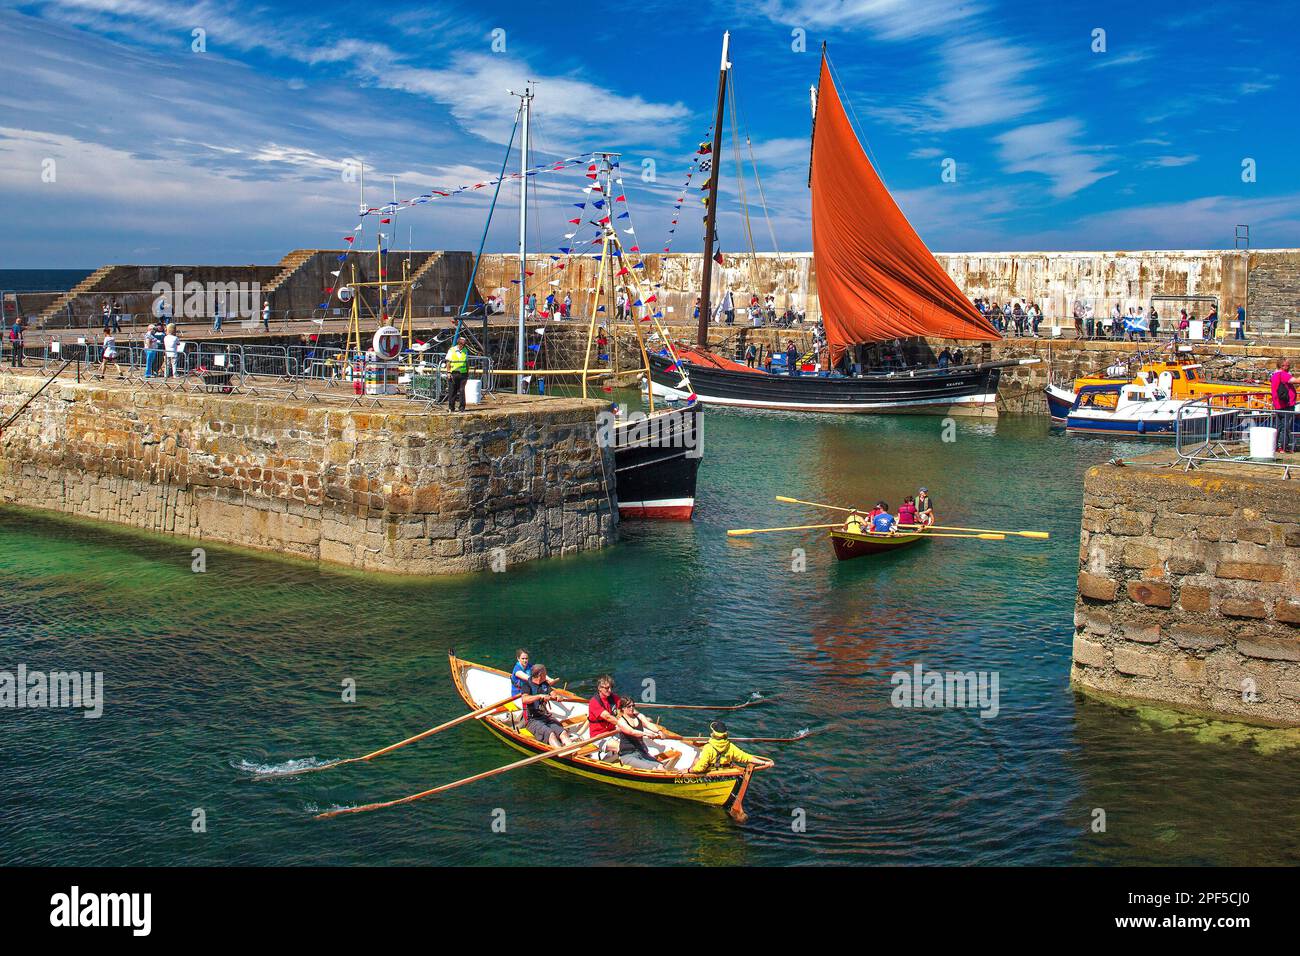 Blick auf das traditionelle Bootsfestival in Portsoy, Moray Firth, Banffshire, Schottland, Großbritannien Stockfoto